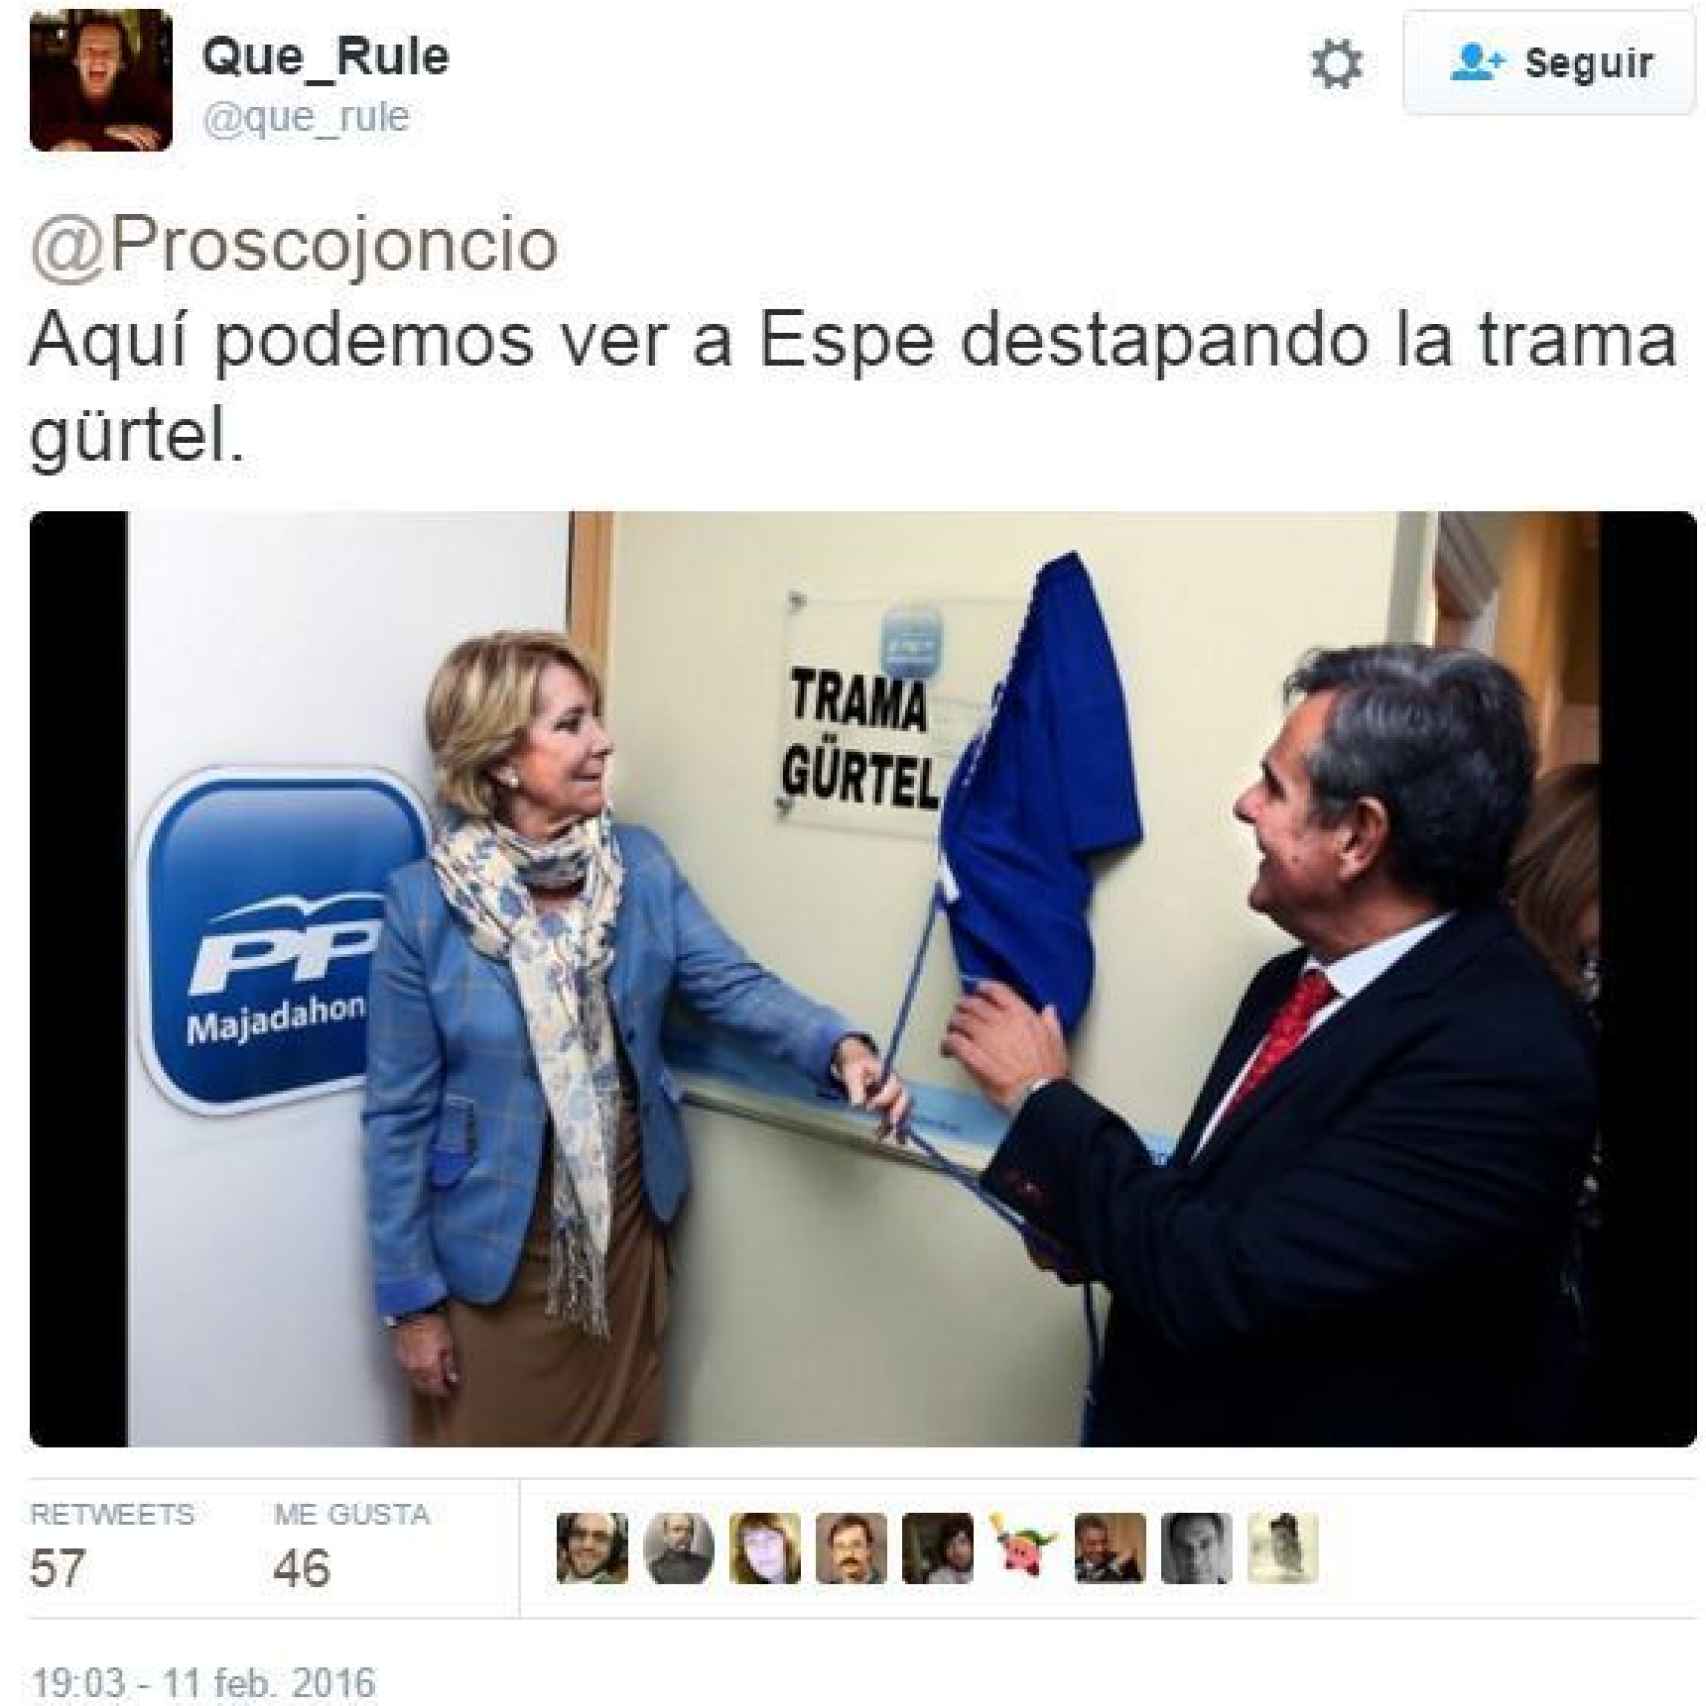 Uno de los memes que bromea sobre cuándo Esperanza Aguirre 'descubrió la trama Gürtel'